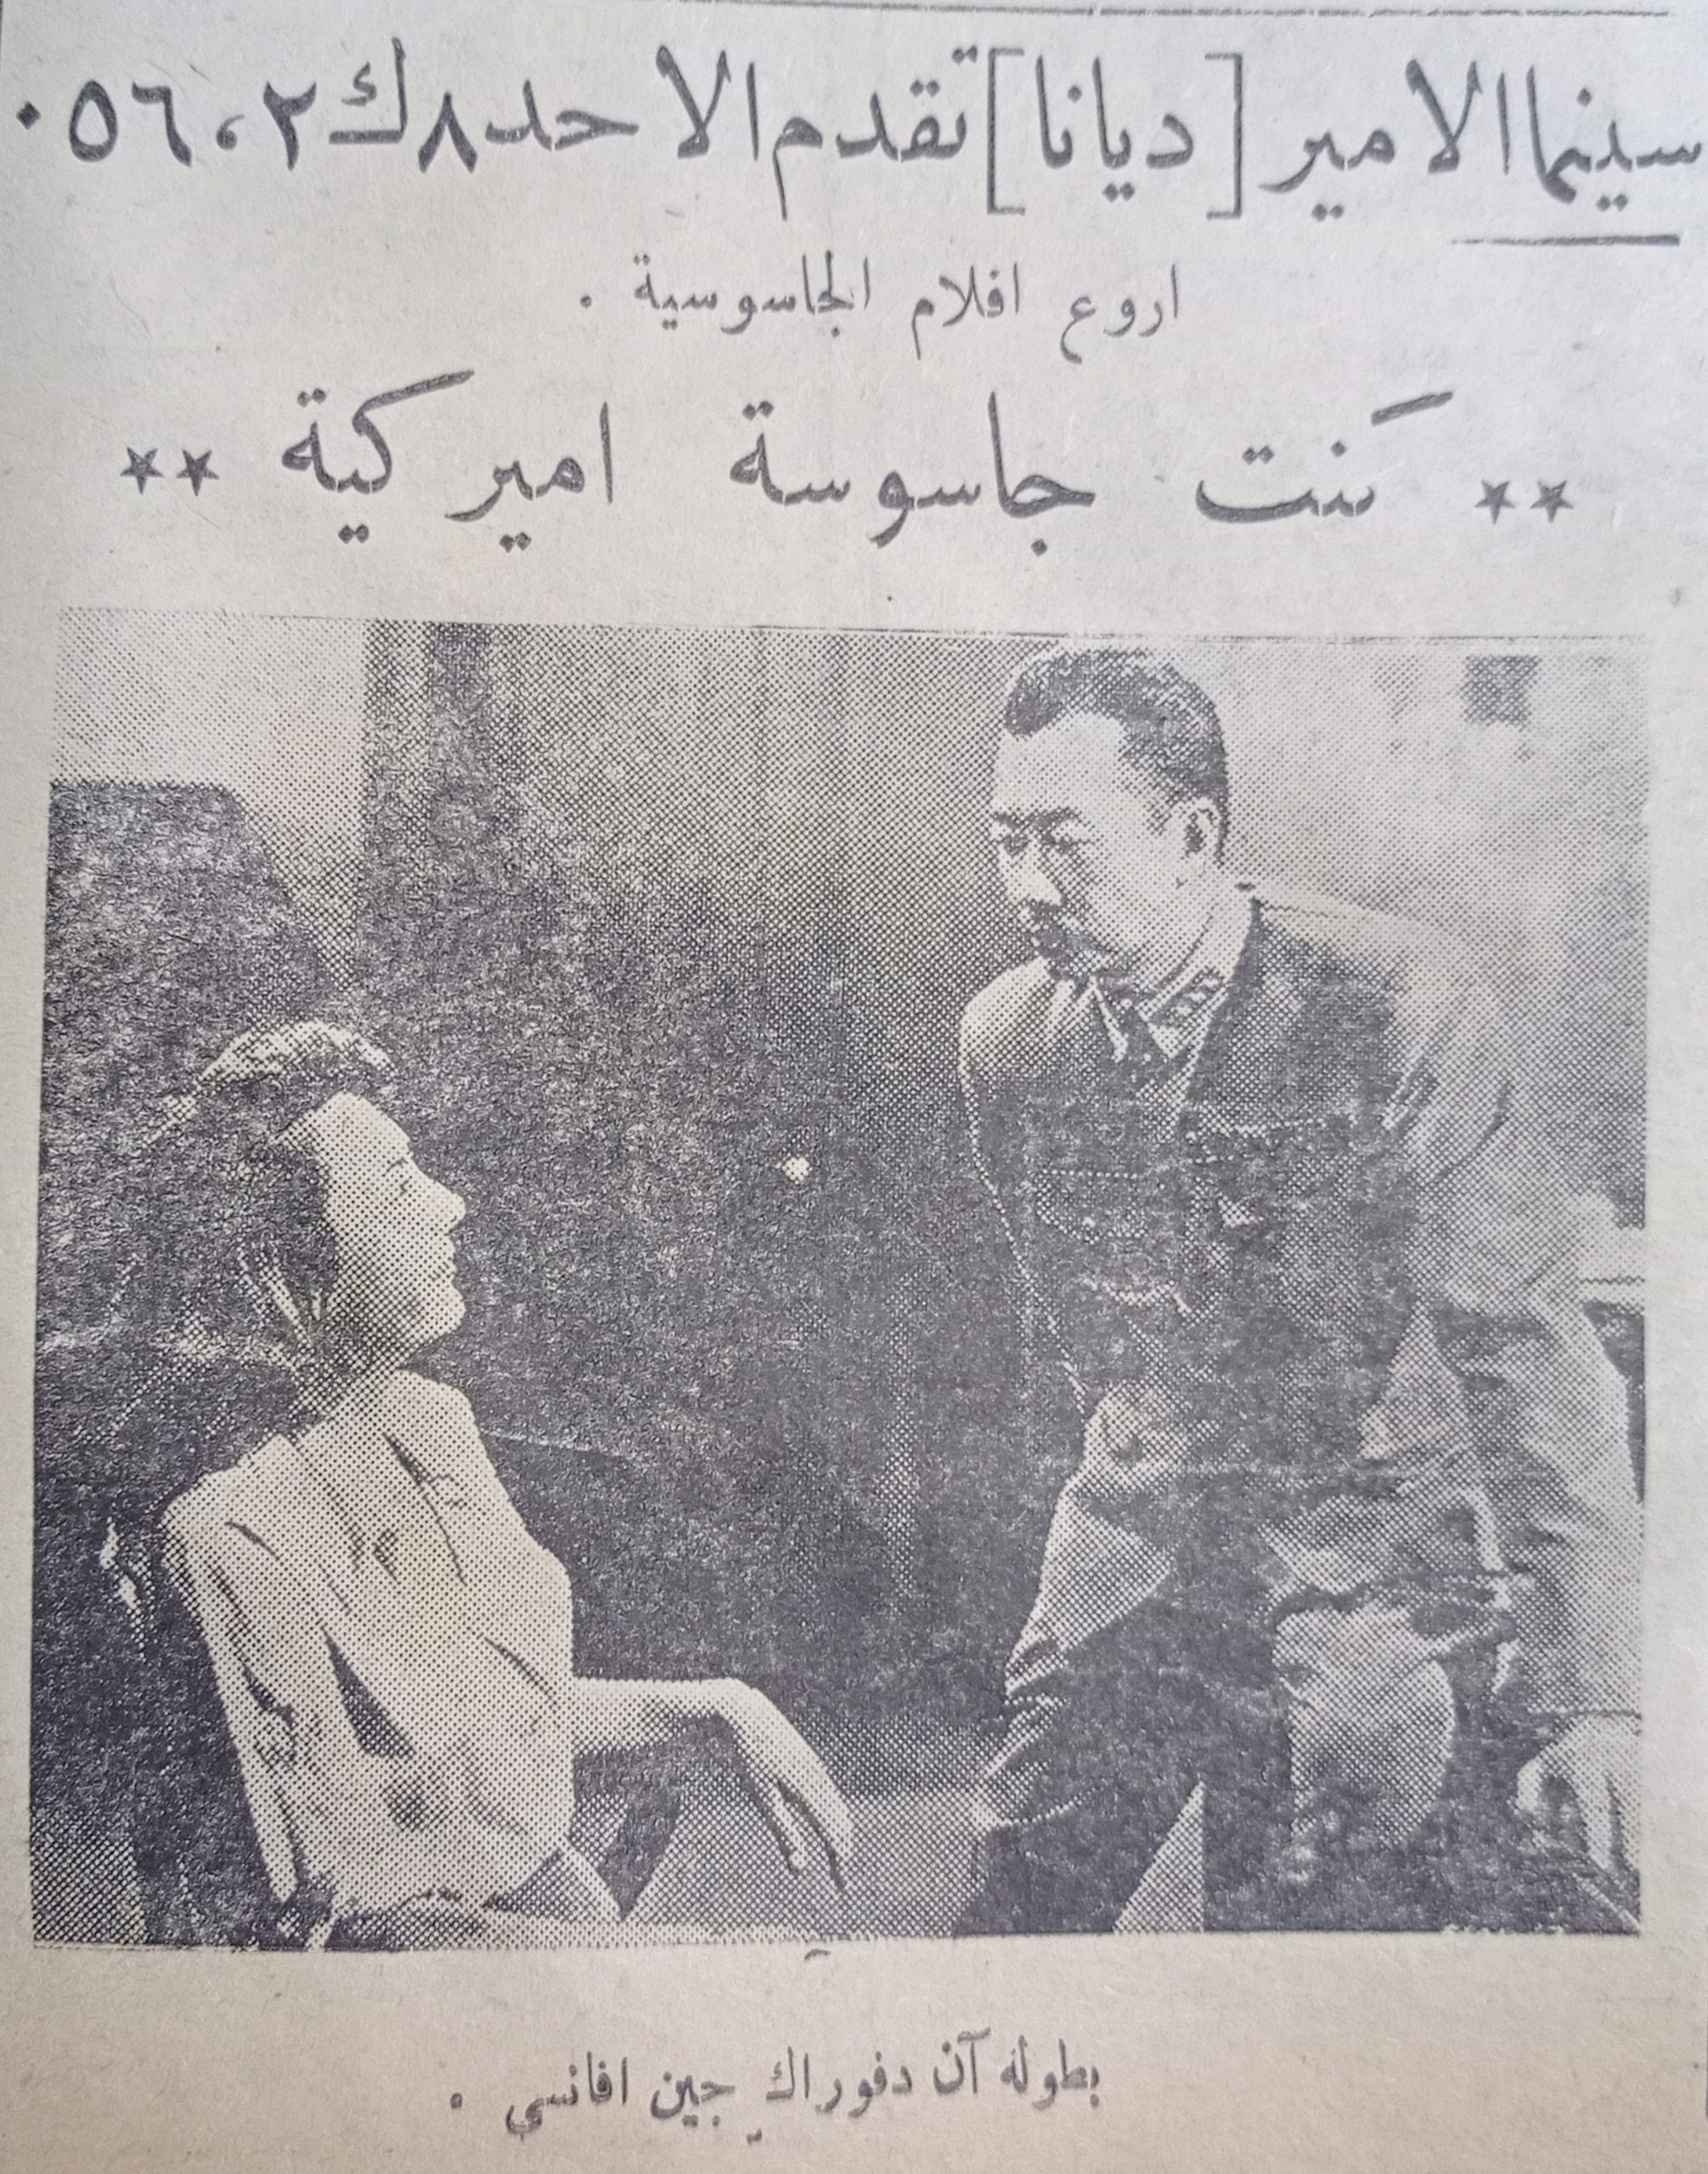 التاريخ السوري المعاصر - إعلان عن فيلم كنت جاسوسة أمريكية في سينما الأمير في حلب عام 1956